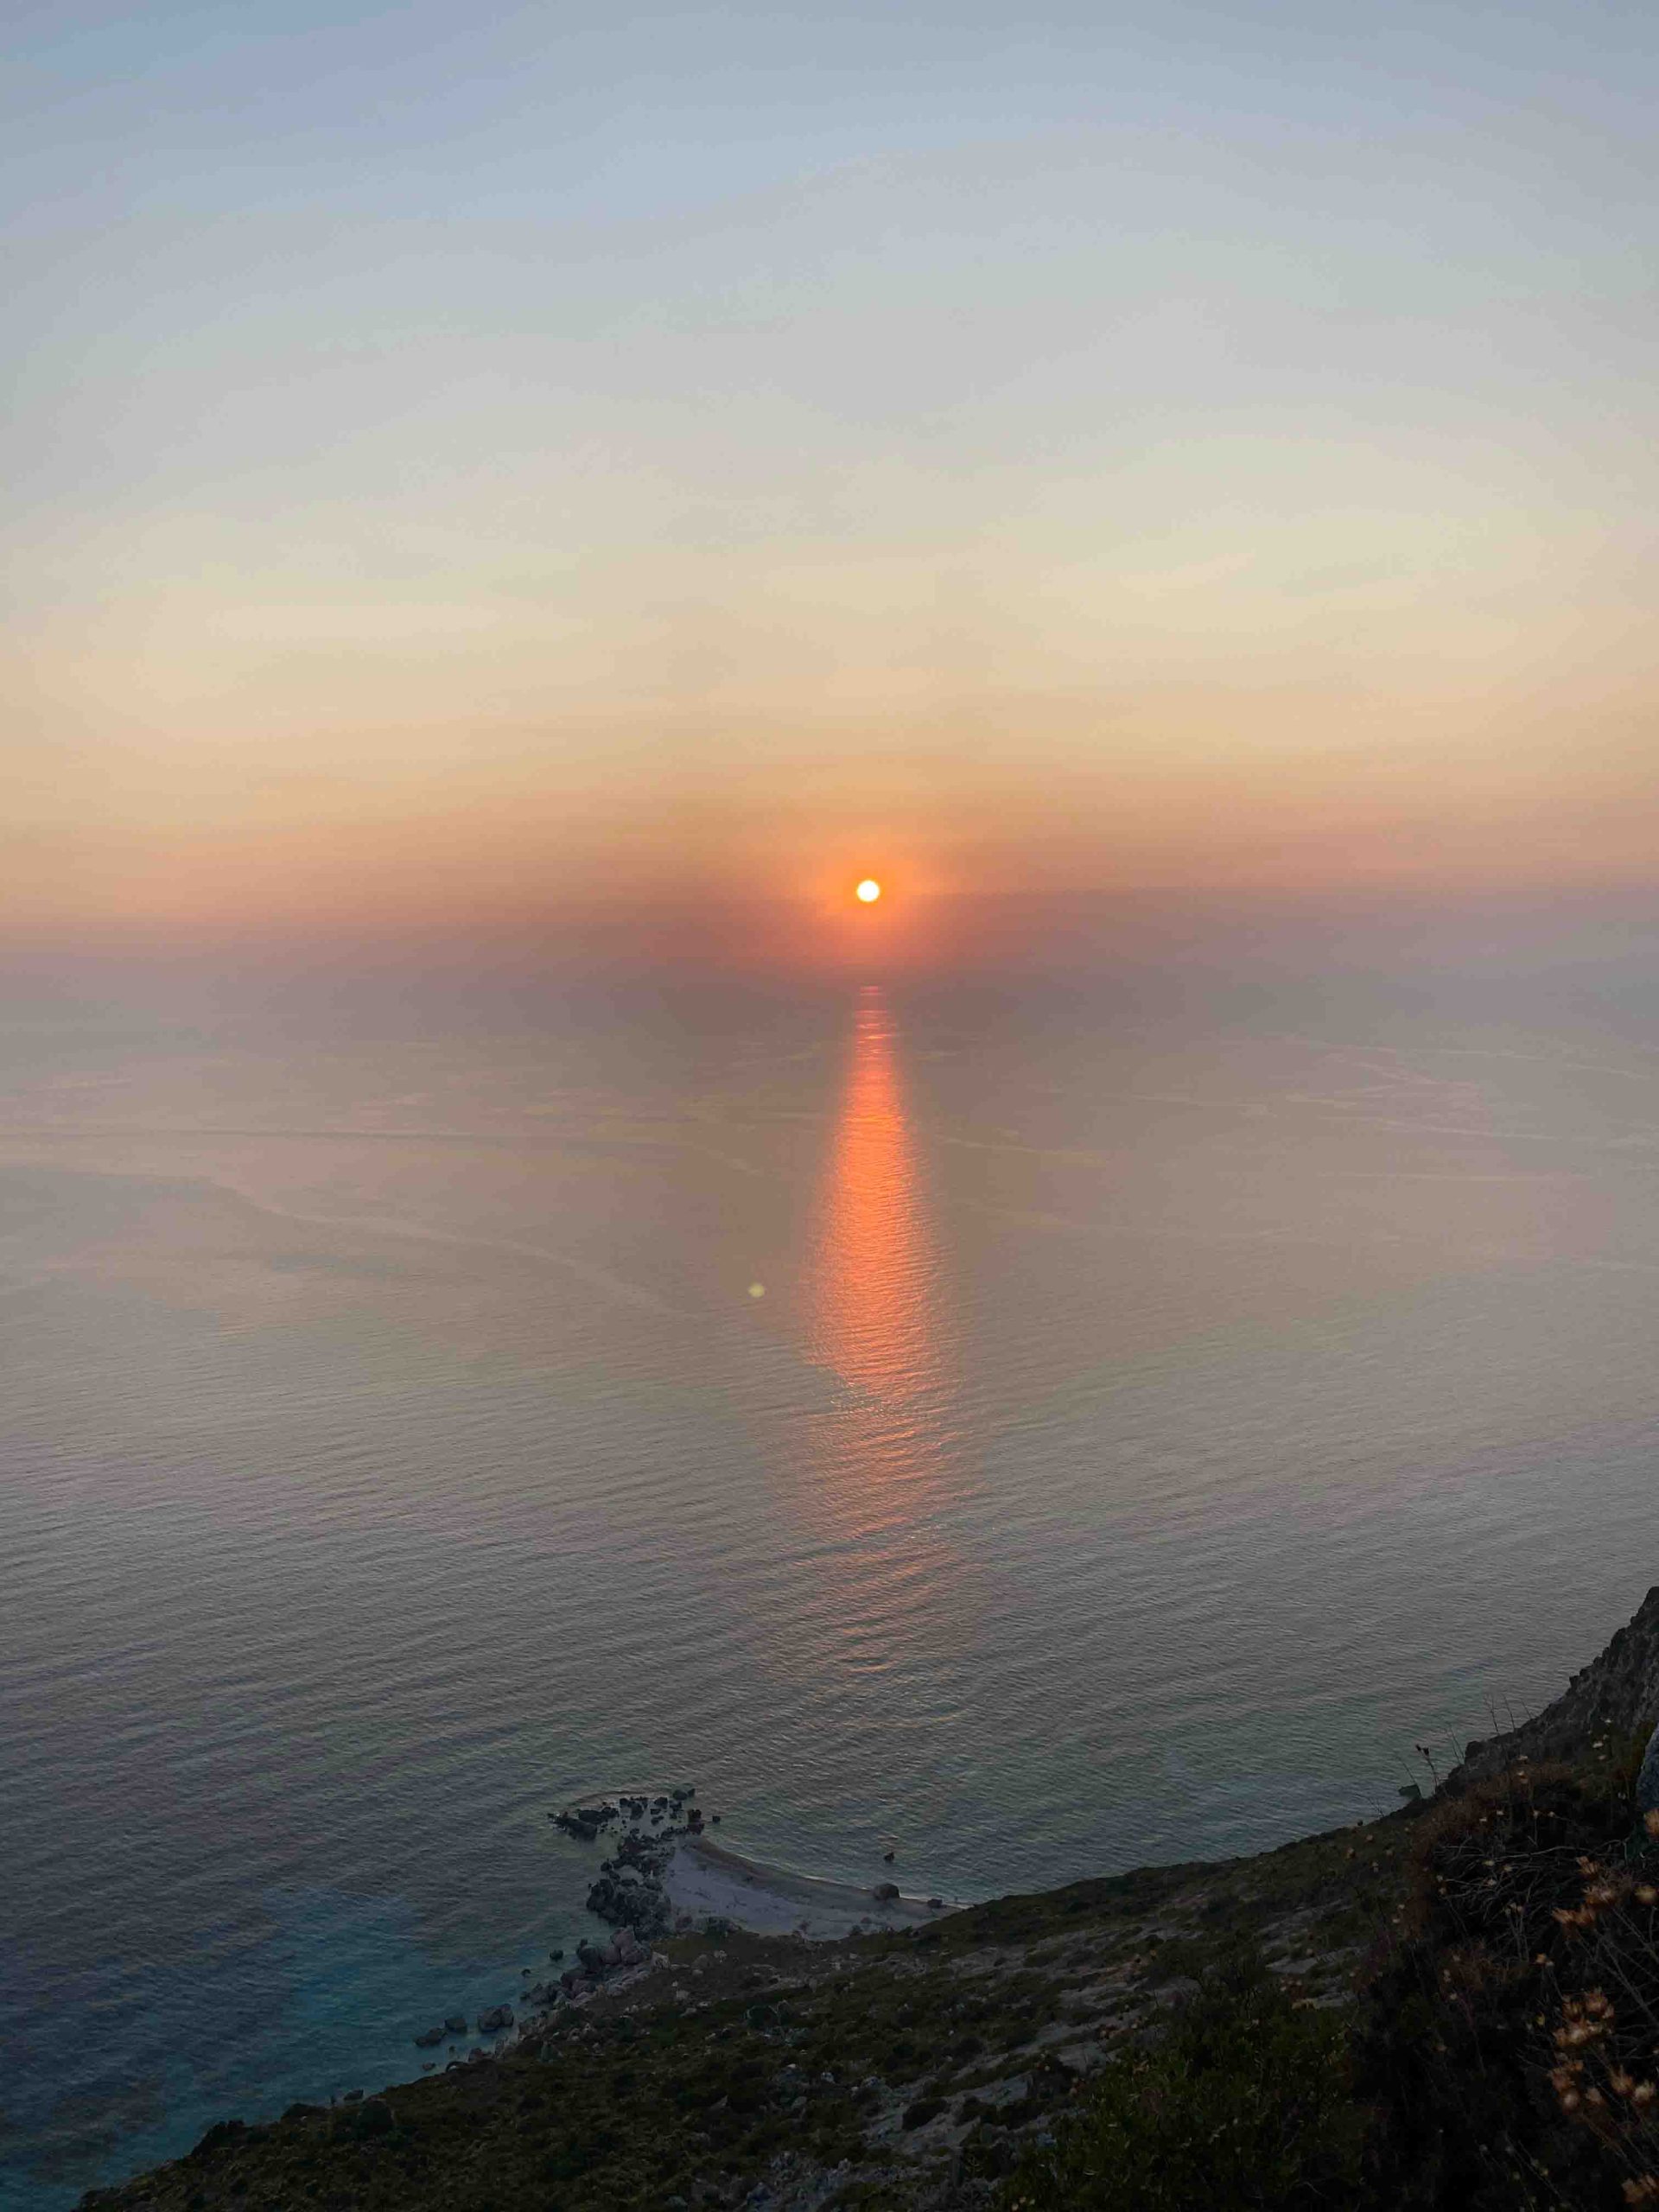 Griechenland in othonoi am Berg mit wunderschönem Sonnenuntergang und blick auf das Meer